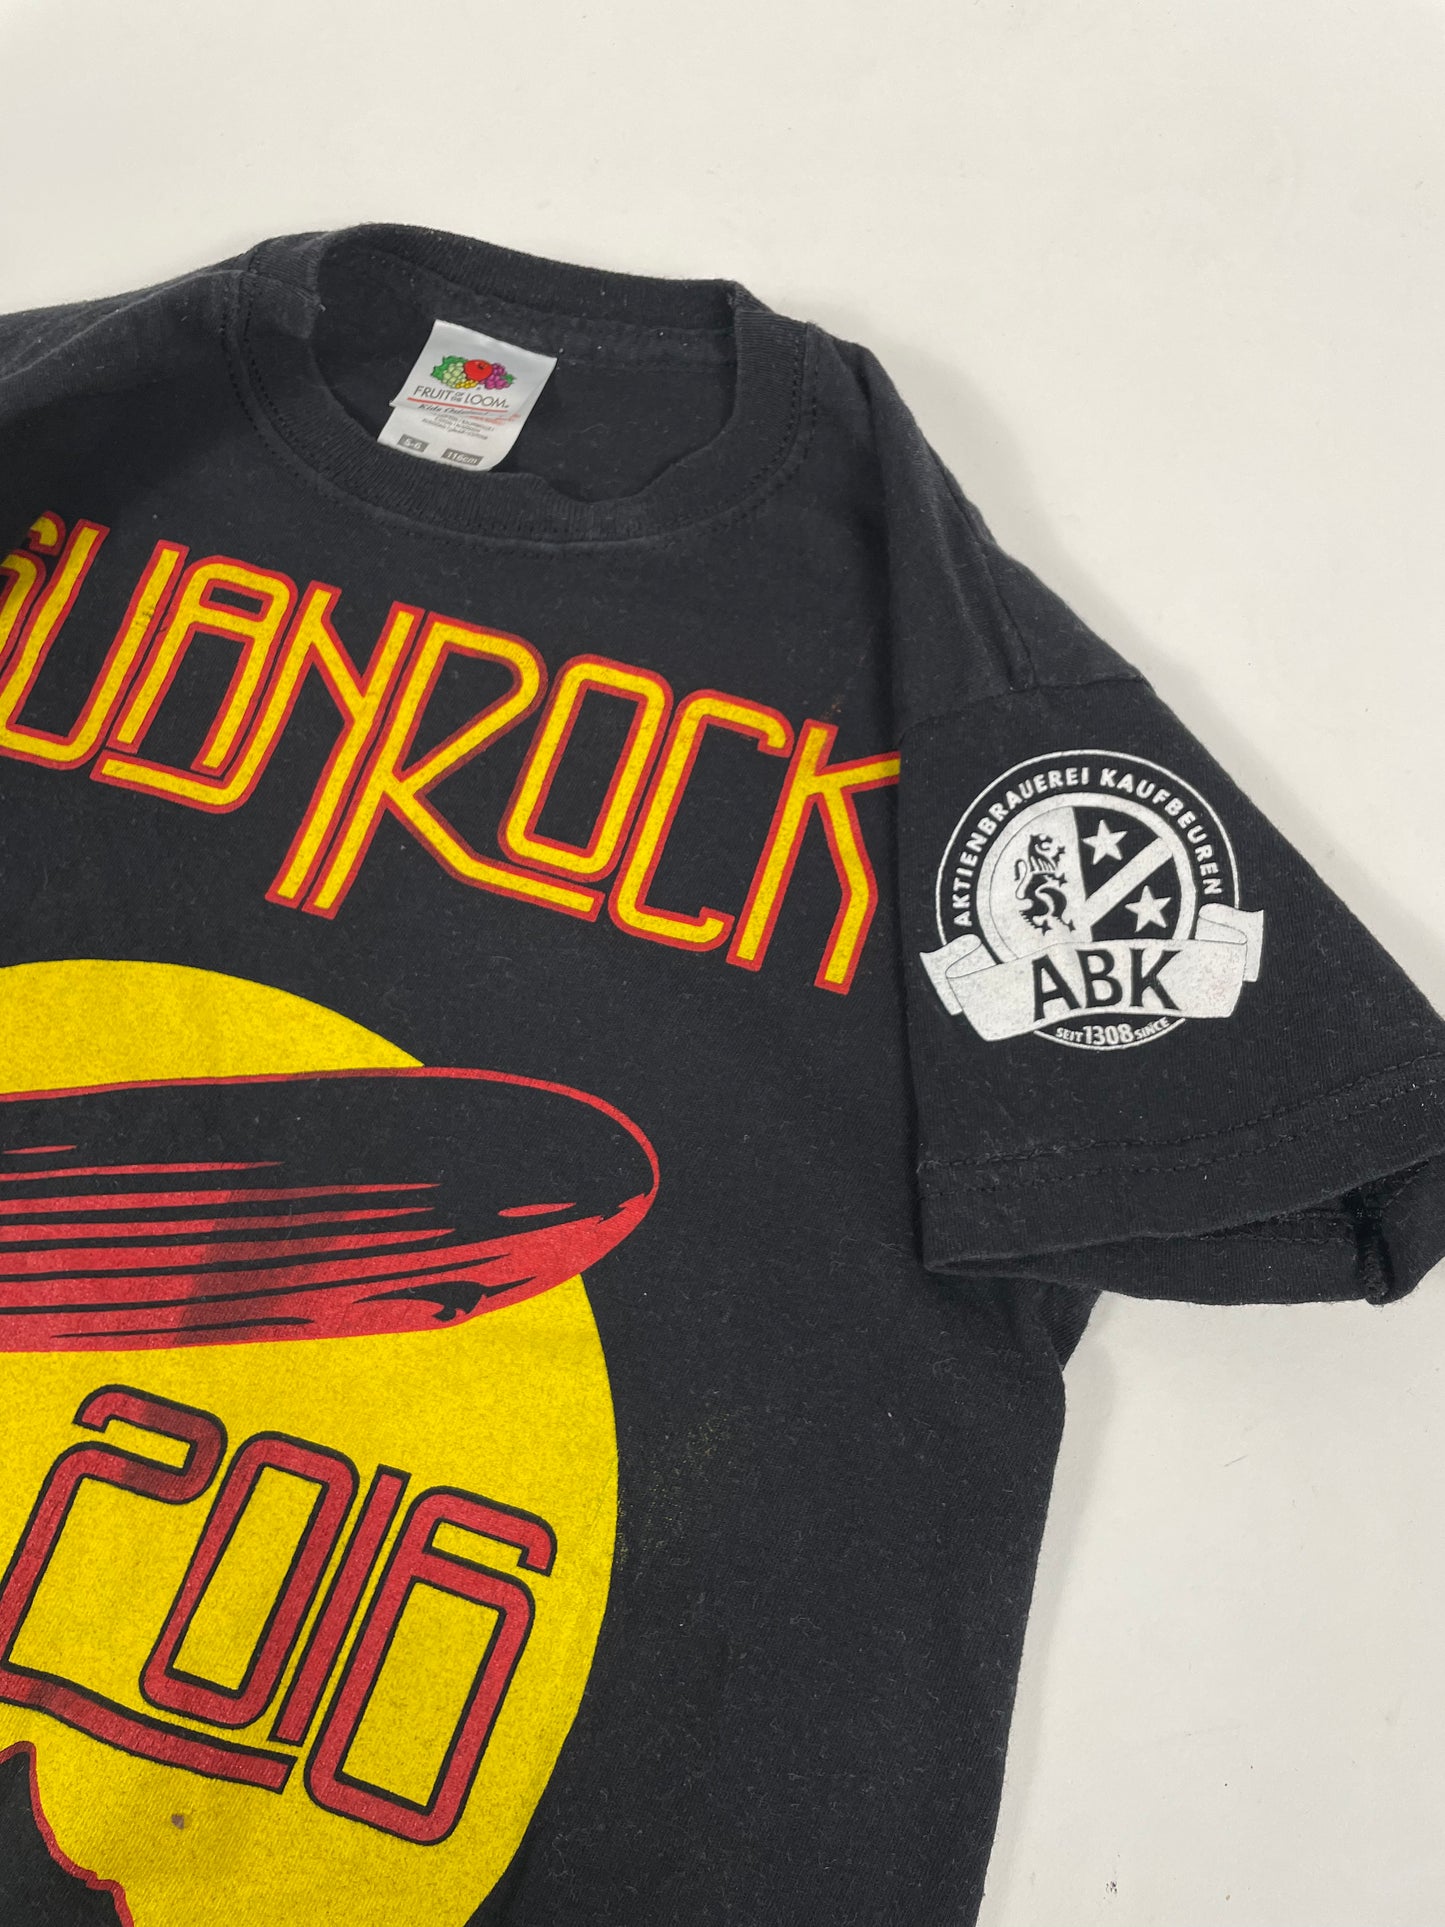 T-shirt Sound Rock 2016